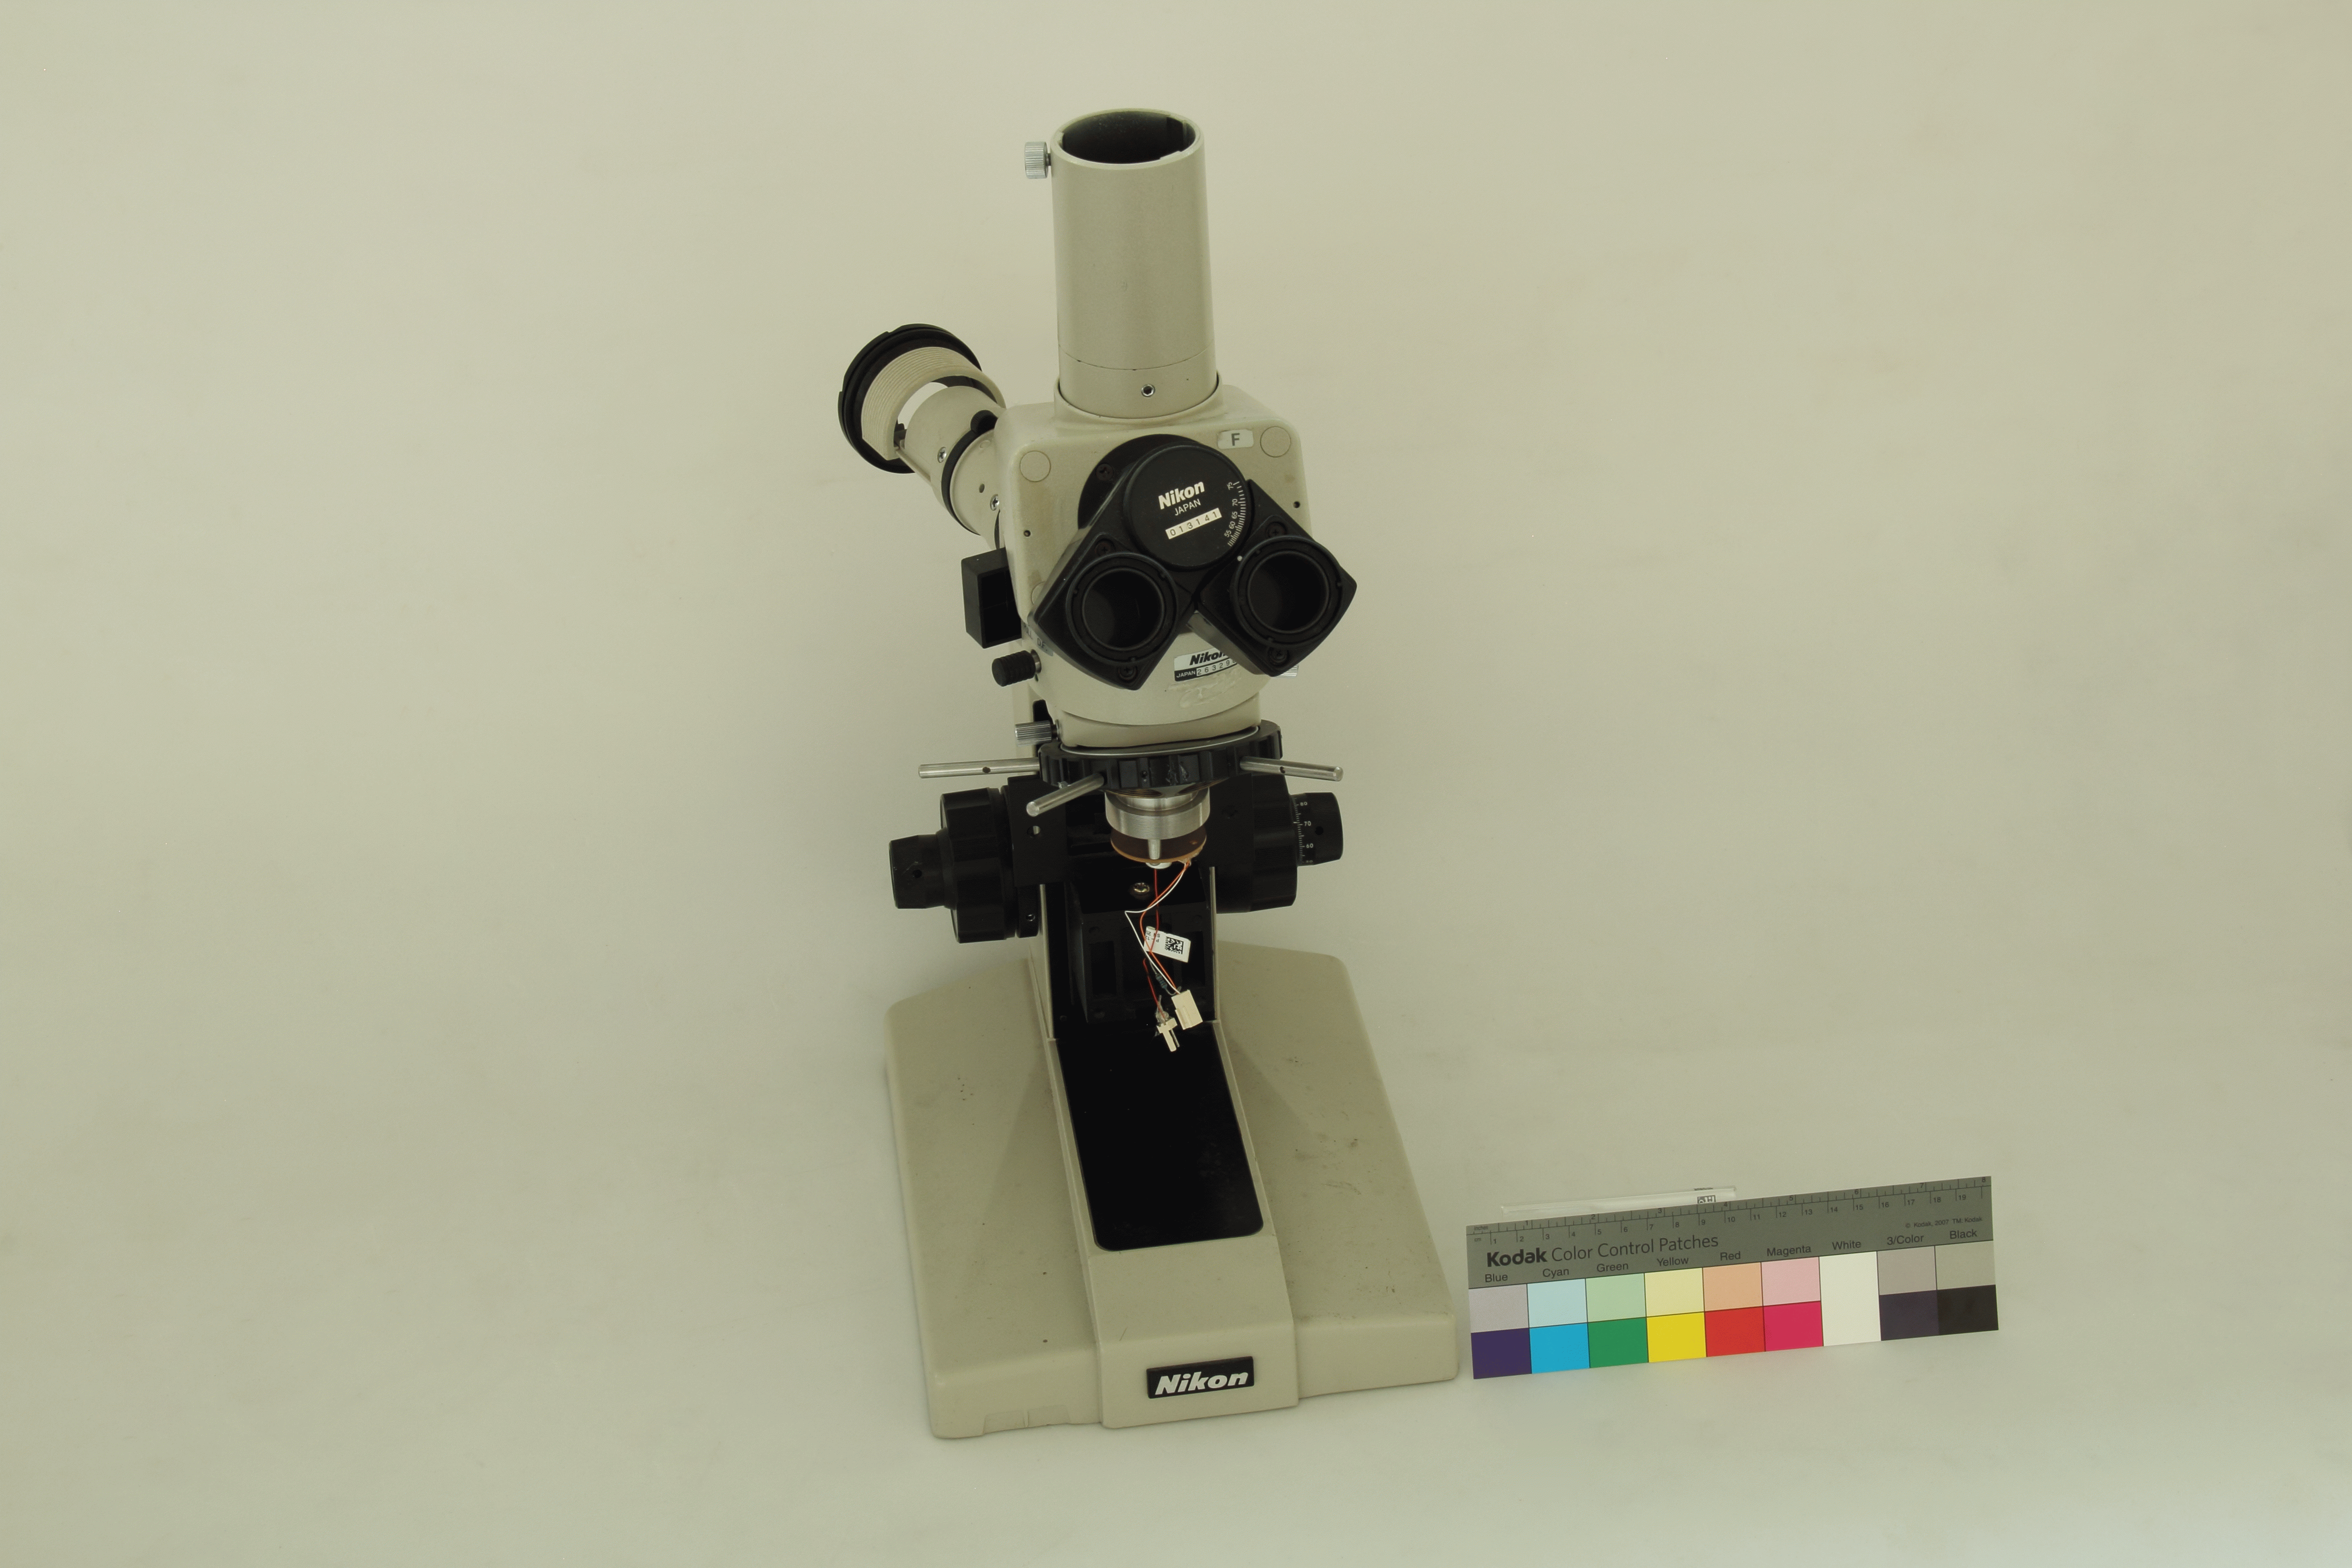 光學顯微鏡